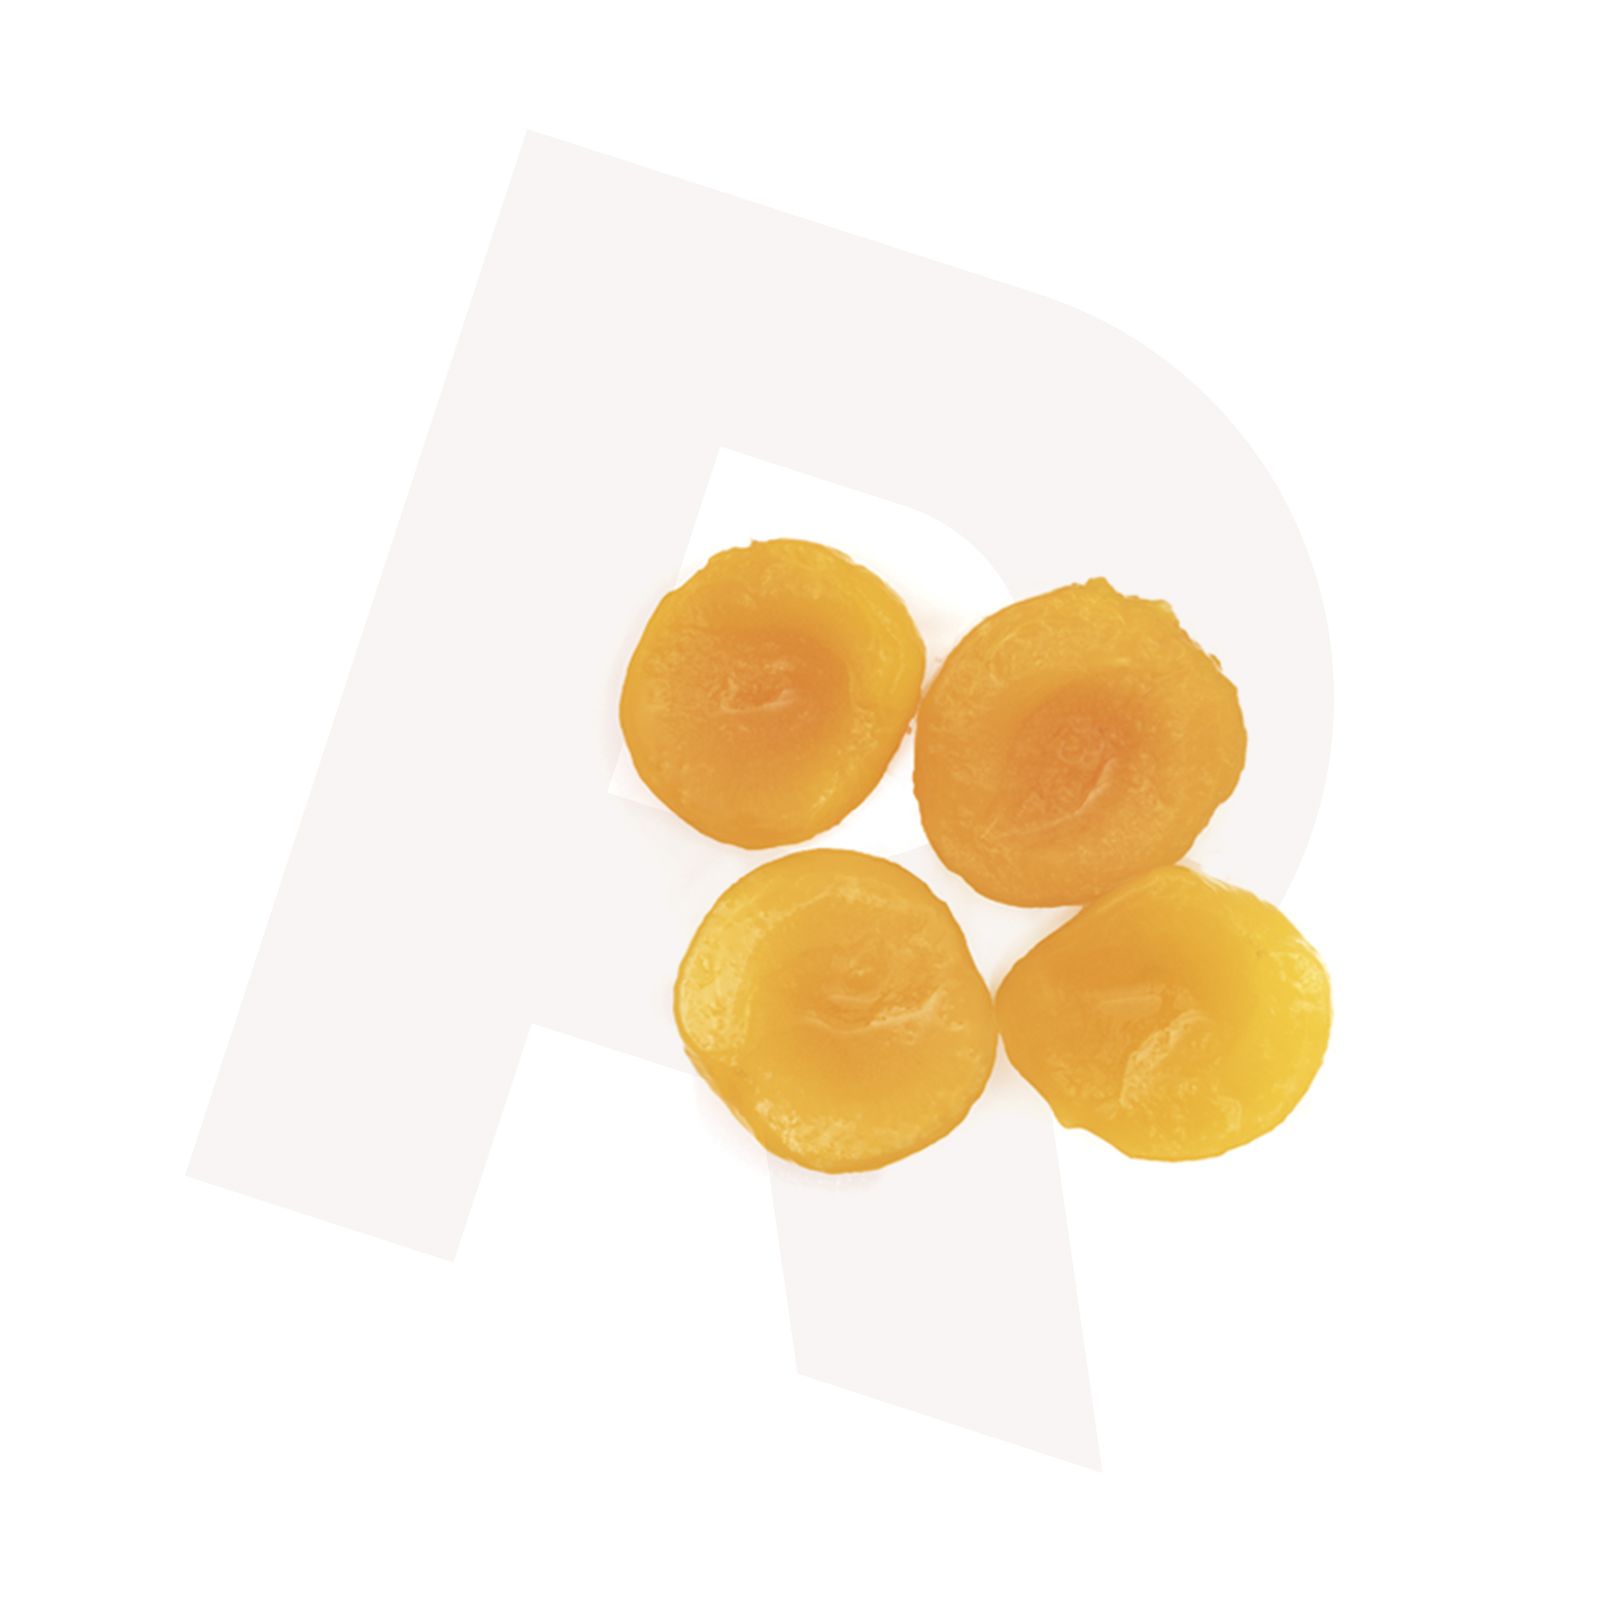 Fruit_Apricot-halves